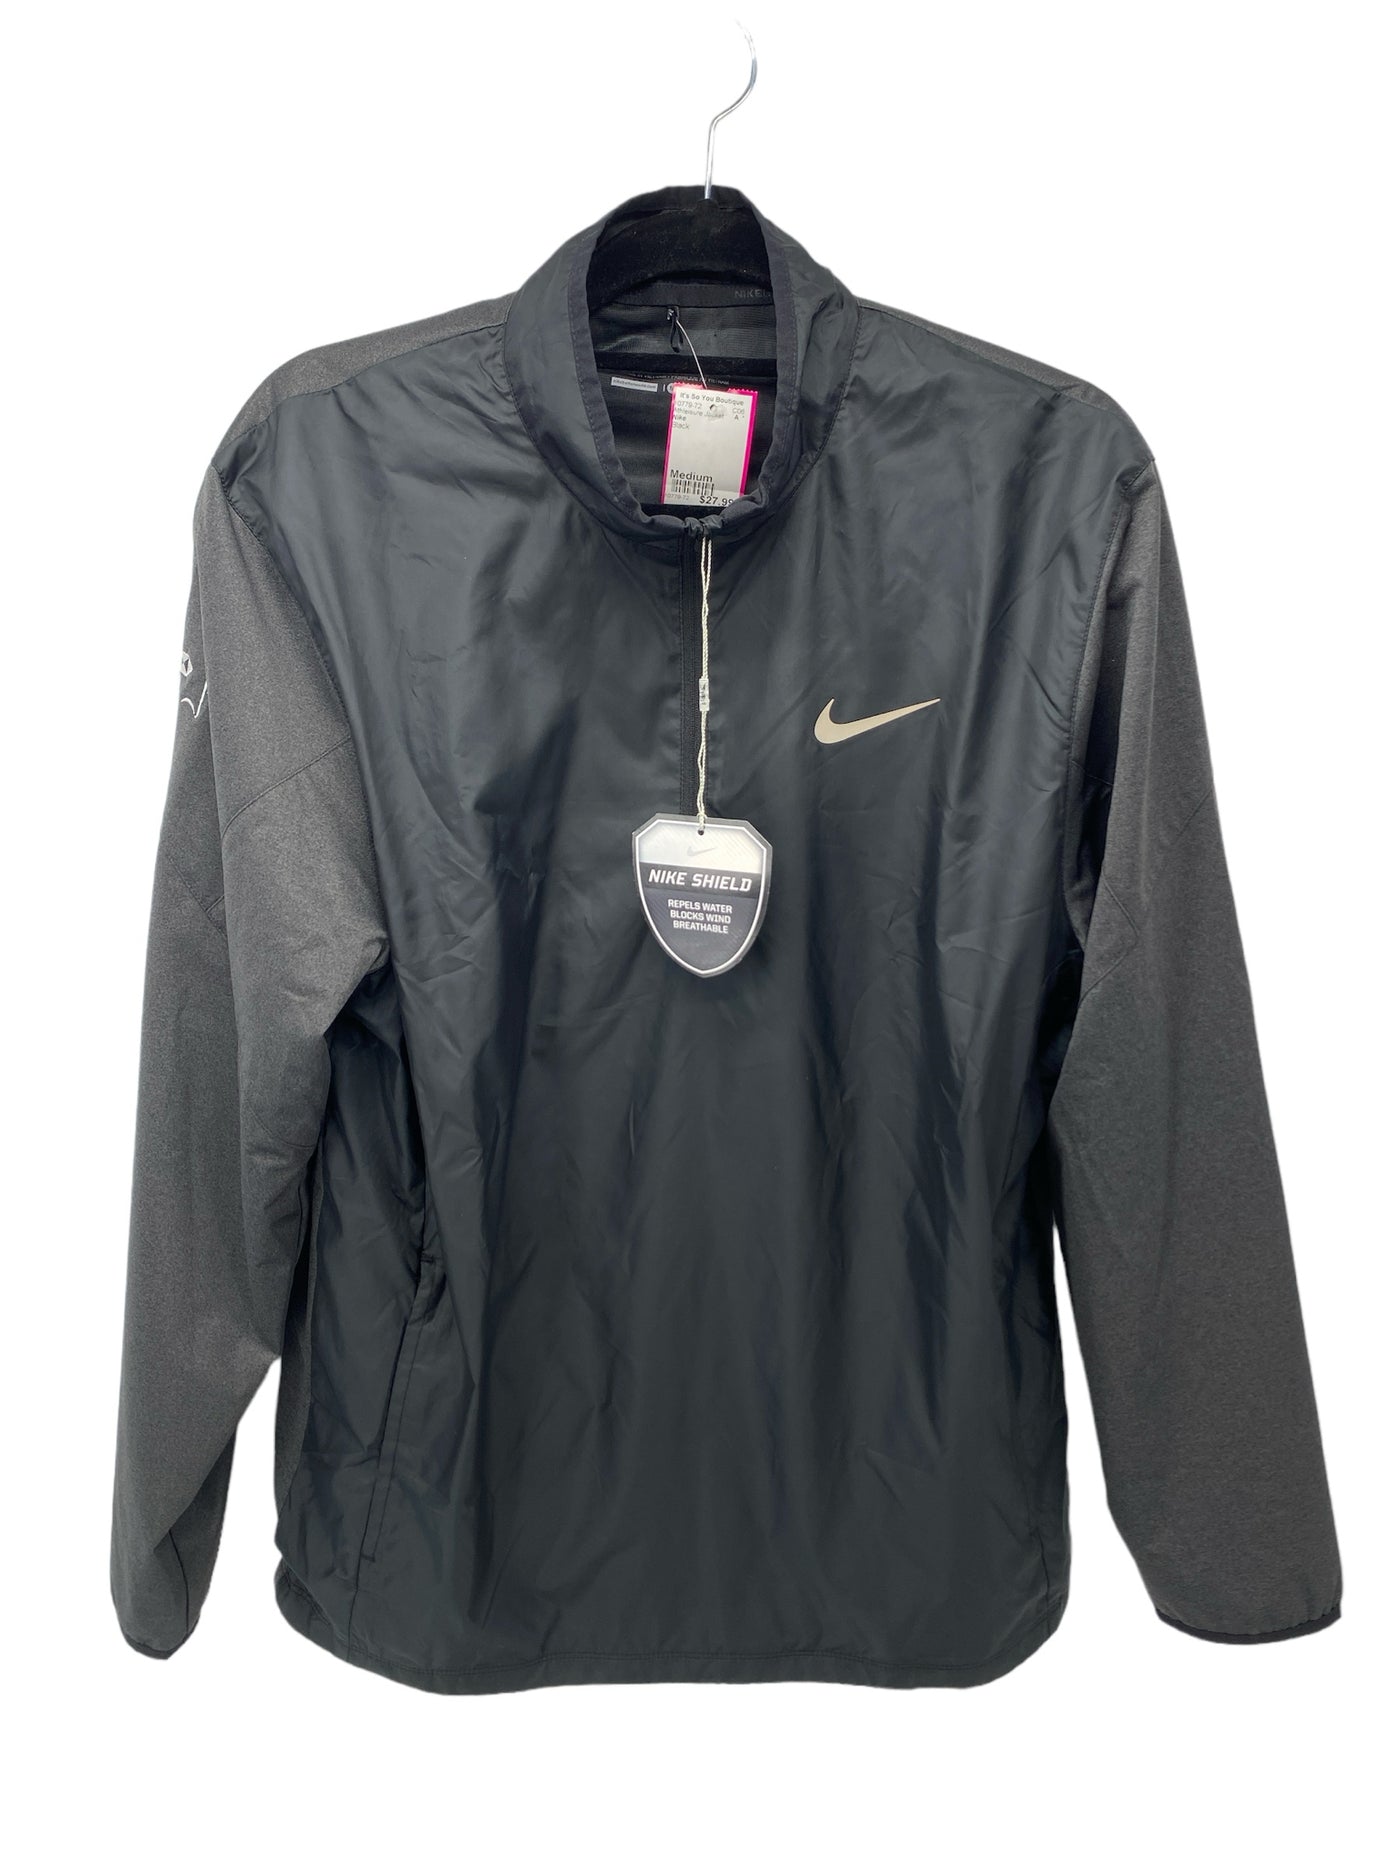 Nike Misses Size Medium Black Athleisure Jacket